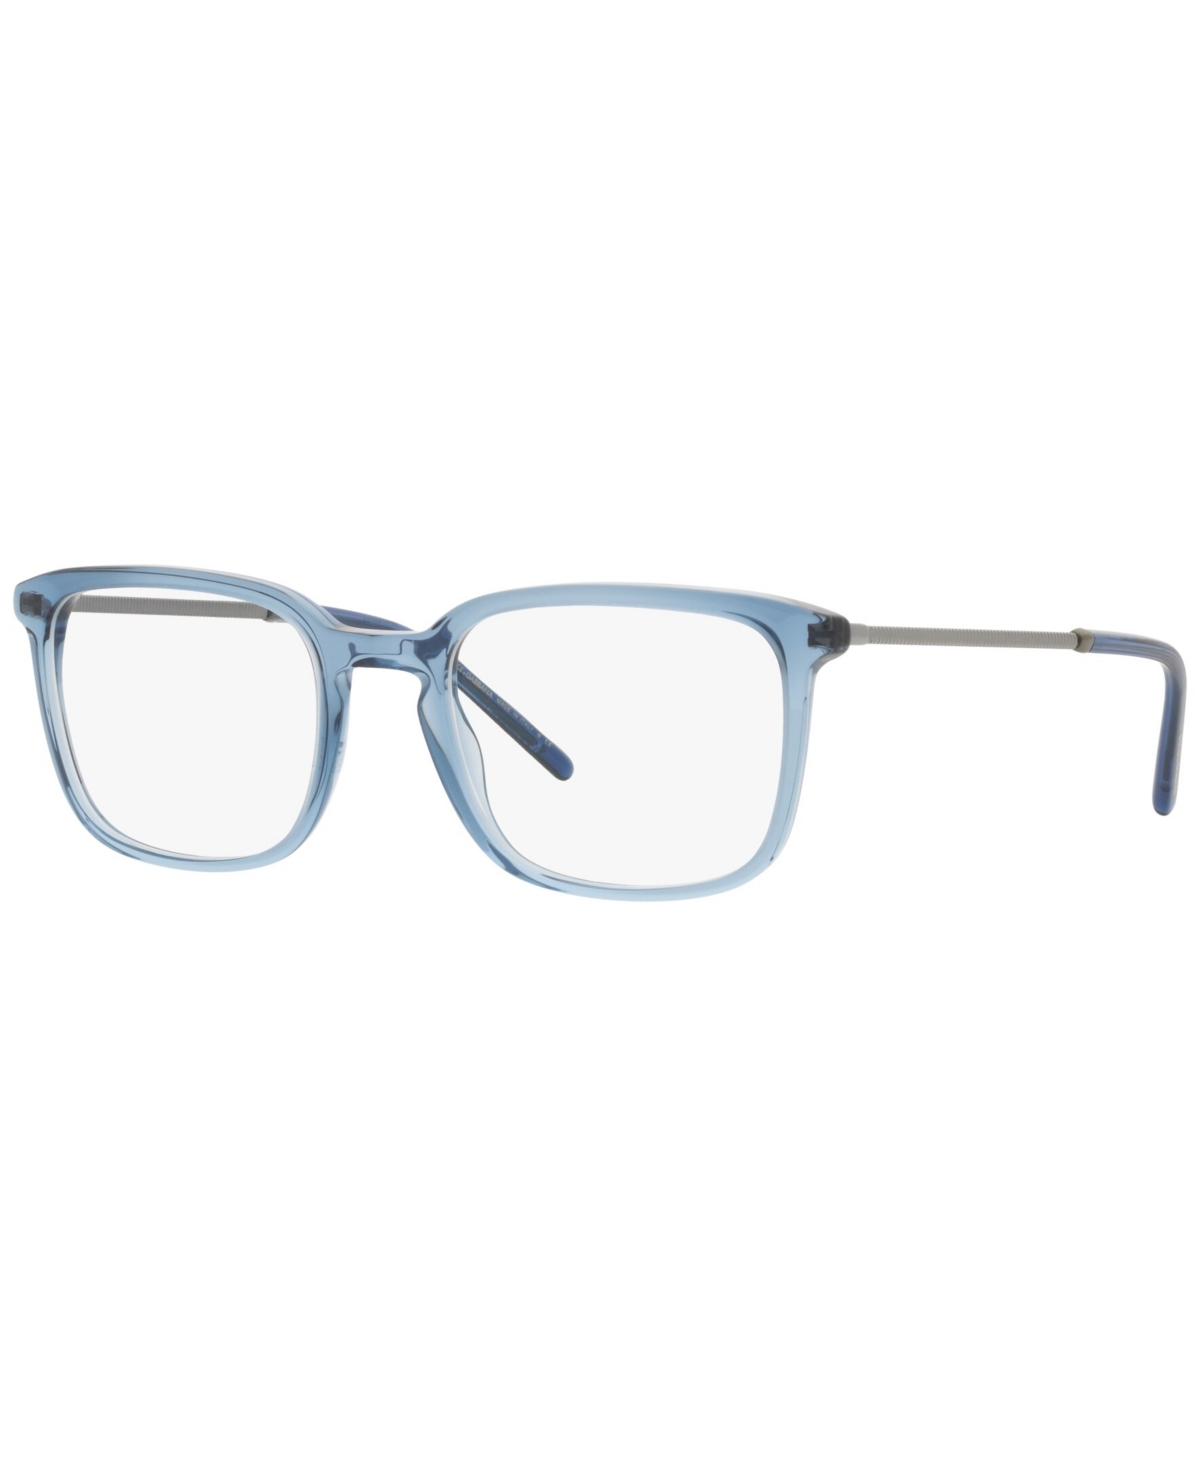 Dolce&gabbana Dolce & Gabbana DG3349 Men's Square Eyeglasses - Blue